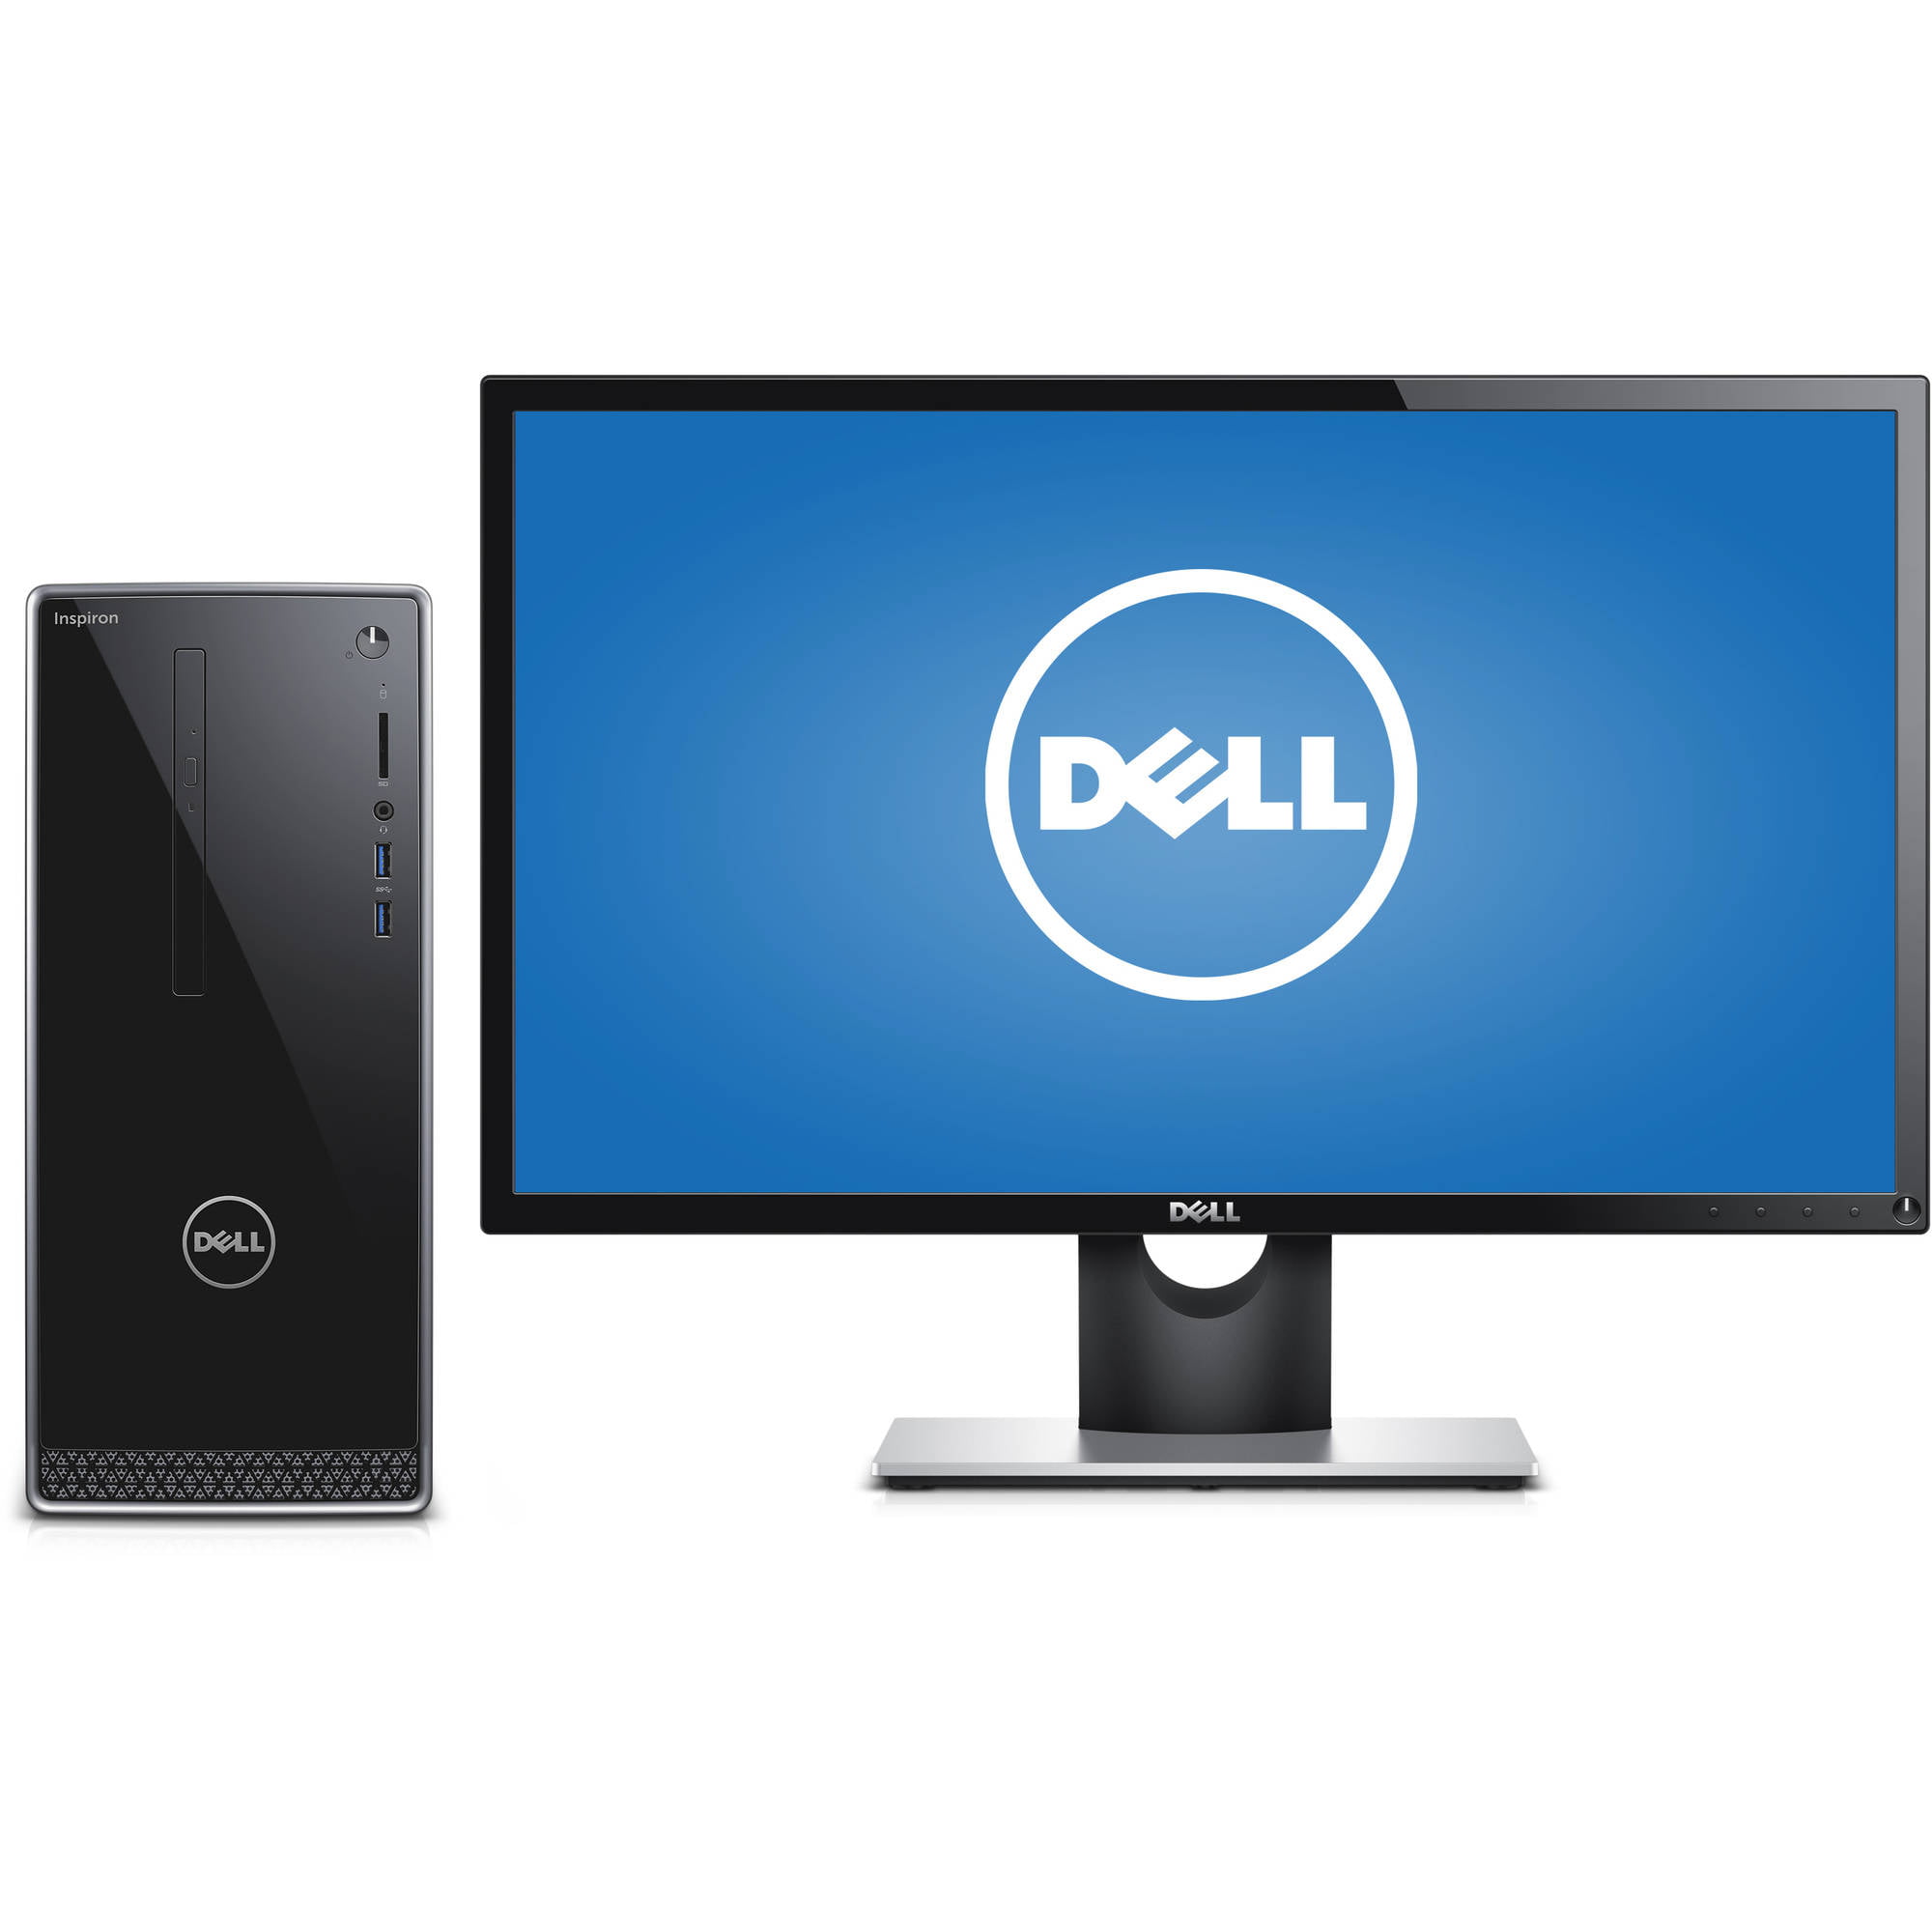 Dell Silver Inspiron 3650 Desktop PC with Intel Core i5-6400 Processor,  12GB Memory, 24